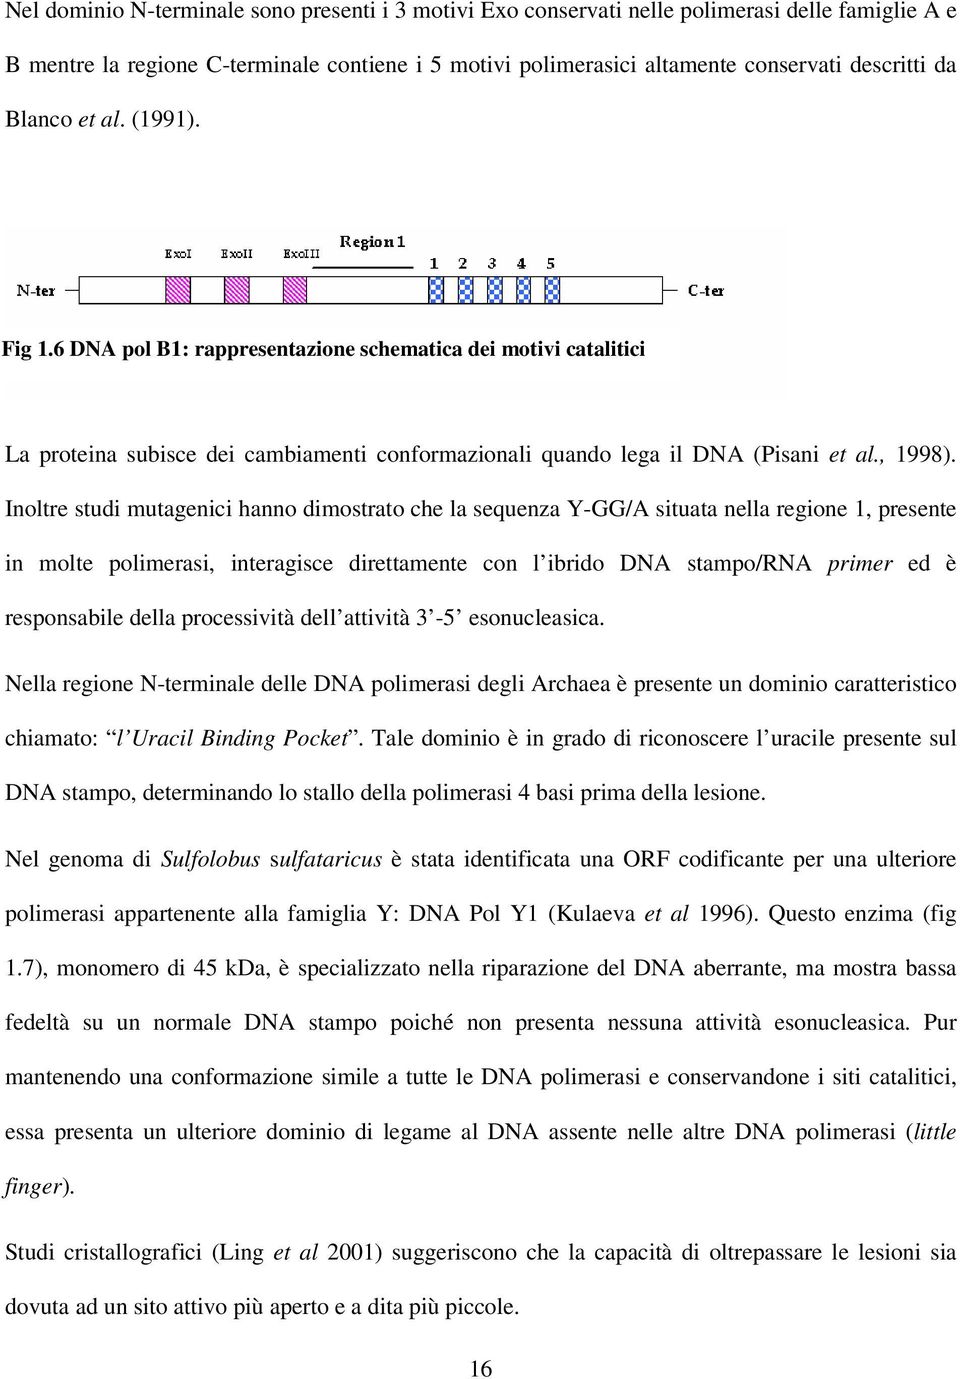 Inoltre studi mutagenici hanno dimostrato che la sequenza Y-GG/A situata nella regione 1, presente in molte polimerasi, interagisce direttamente con l ibrido DNA stampo/rna primer ed è responsabile